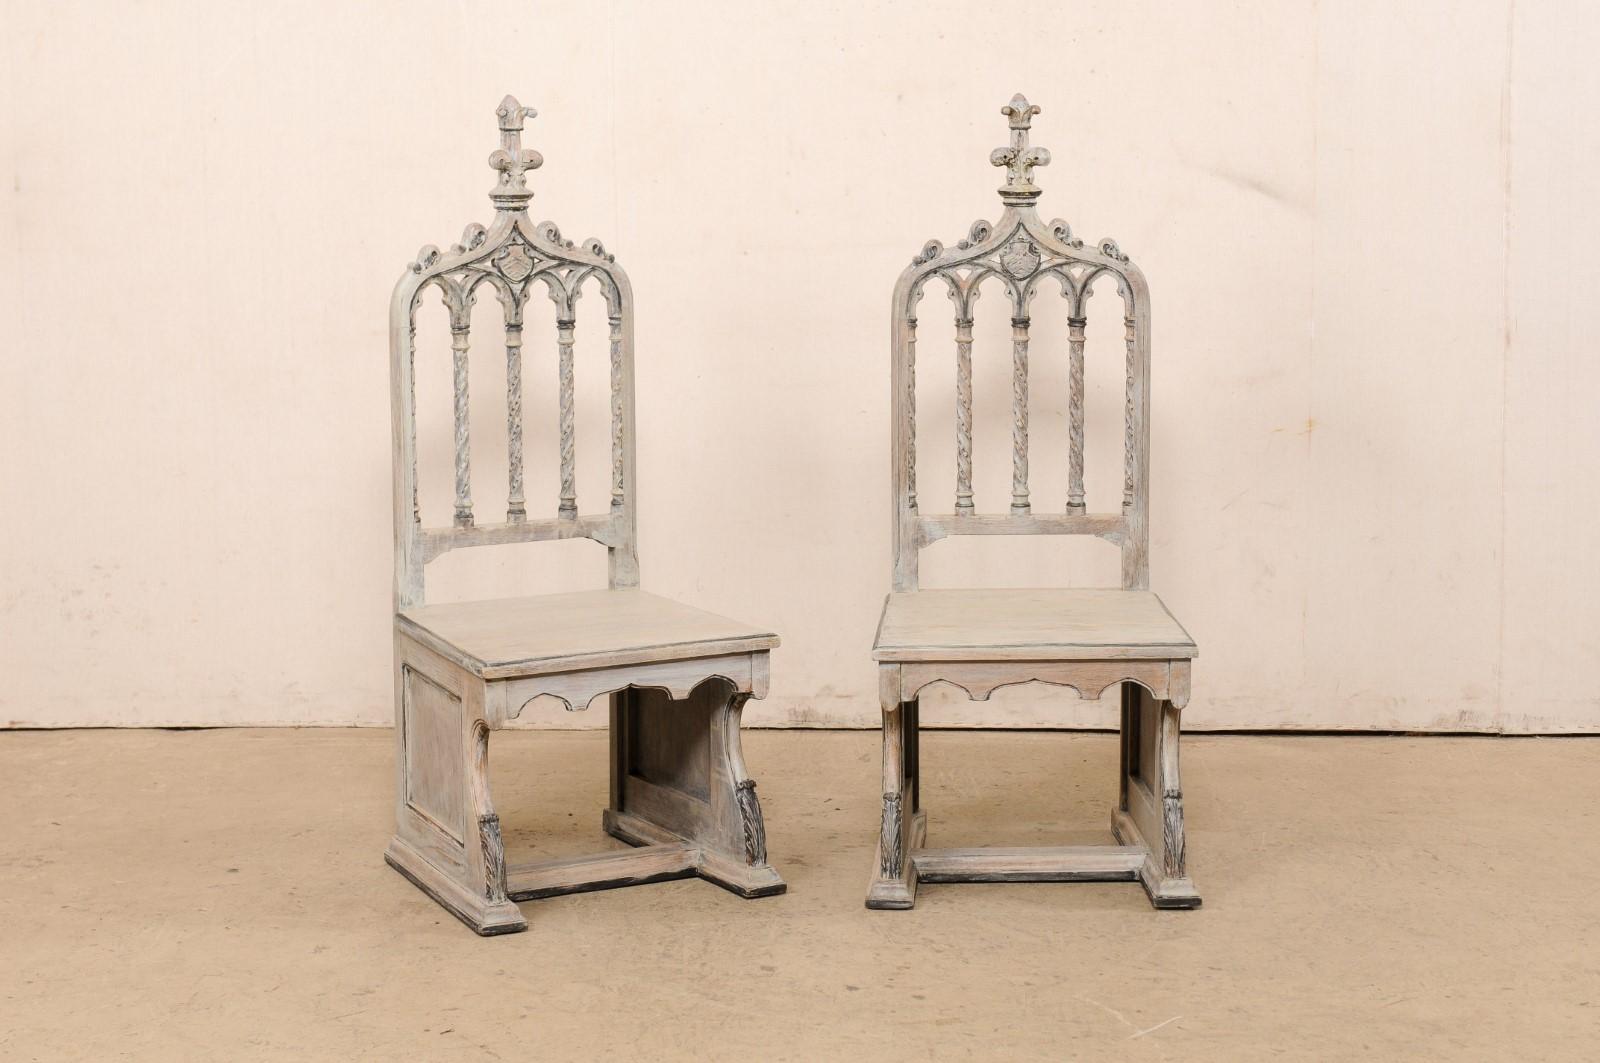 Ein englisches Paar geschnitzter und bemalter Holzstühle im Stil der Neogotik, um die 1920er Jahre. Dieses antike Stuhlpaar aus England wurde aufwändig im Stil der Gotik geschnitzt, mit klassisch gewölbter Rückenlehne, die mit hohen Turmzierleisten